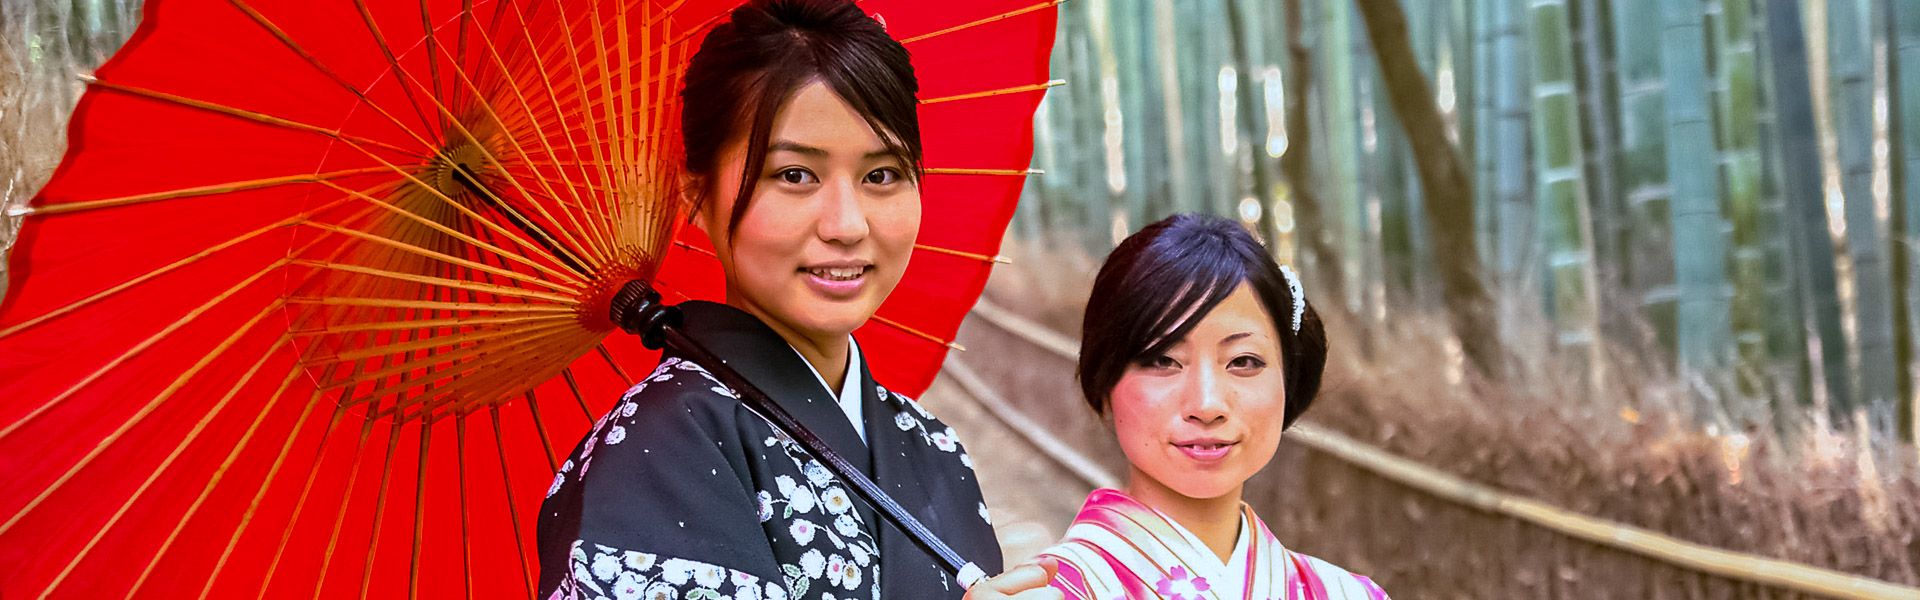 Frauen in Kimonos |  Exo Travel Thailand / Chamleon